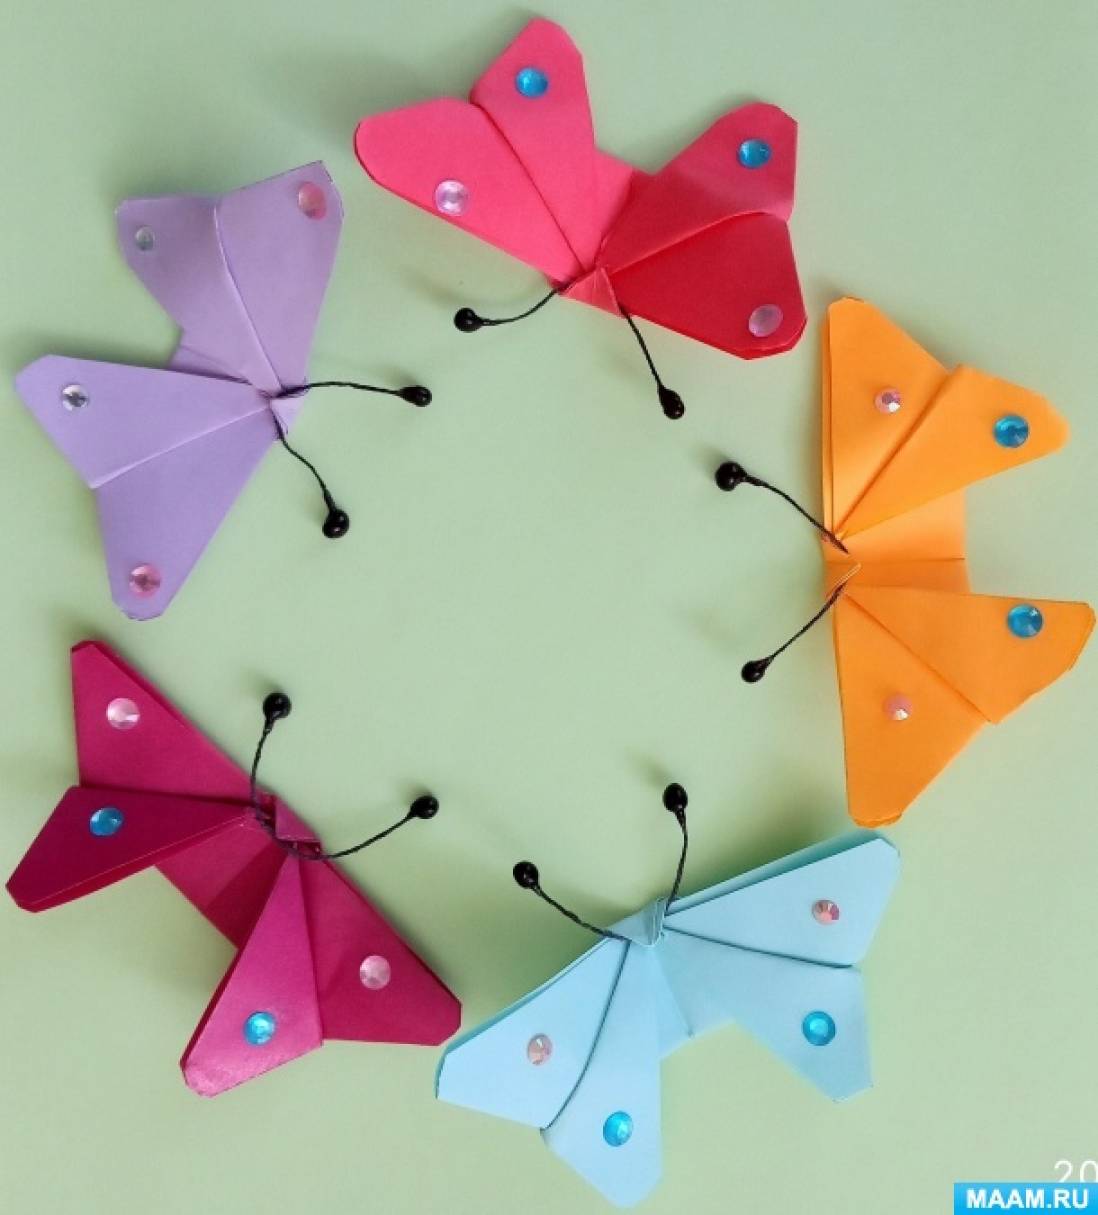 Детский мастер-класс «Бабочка» в технике оригами с элементами аппликации